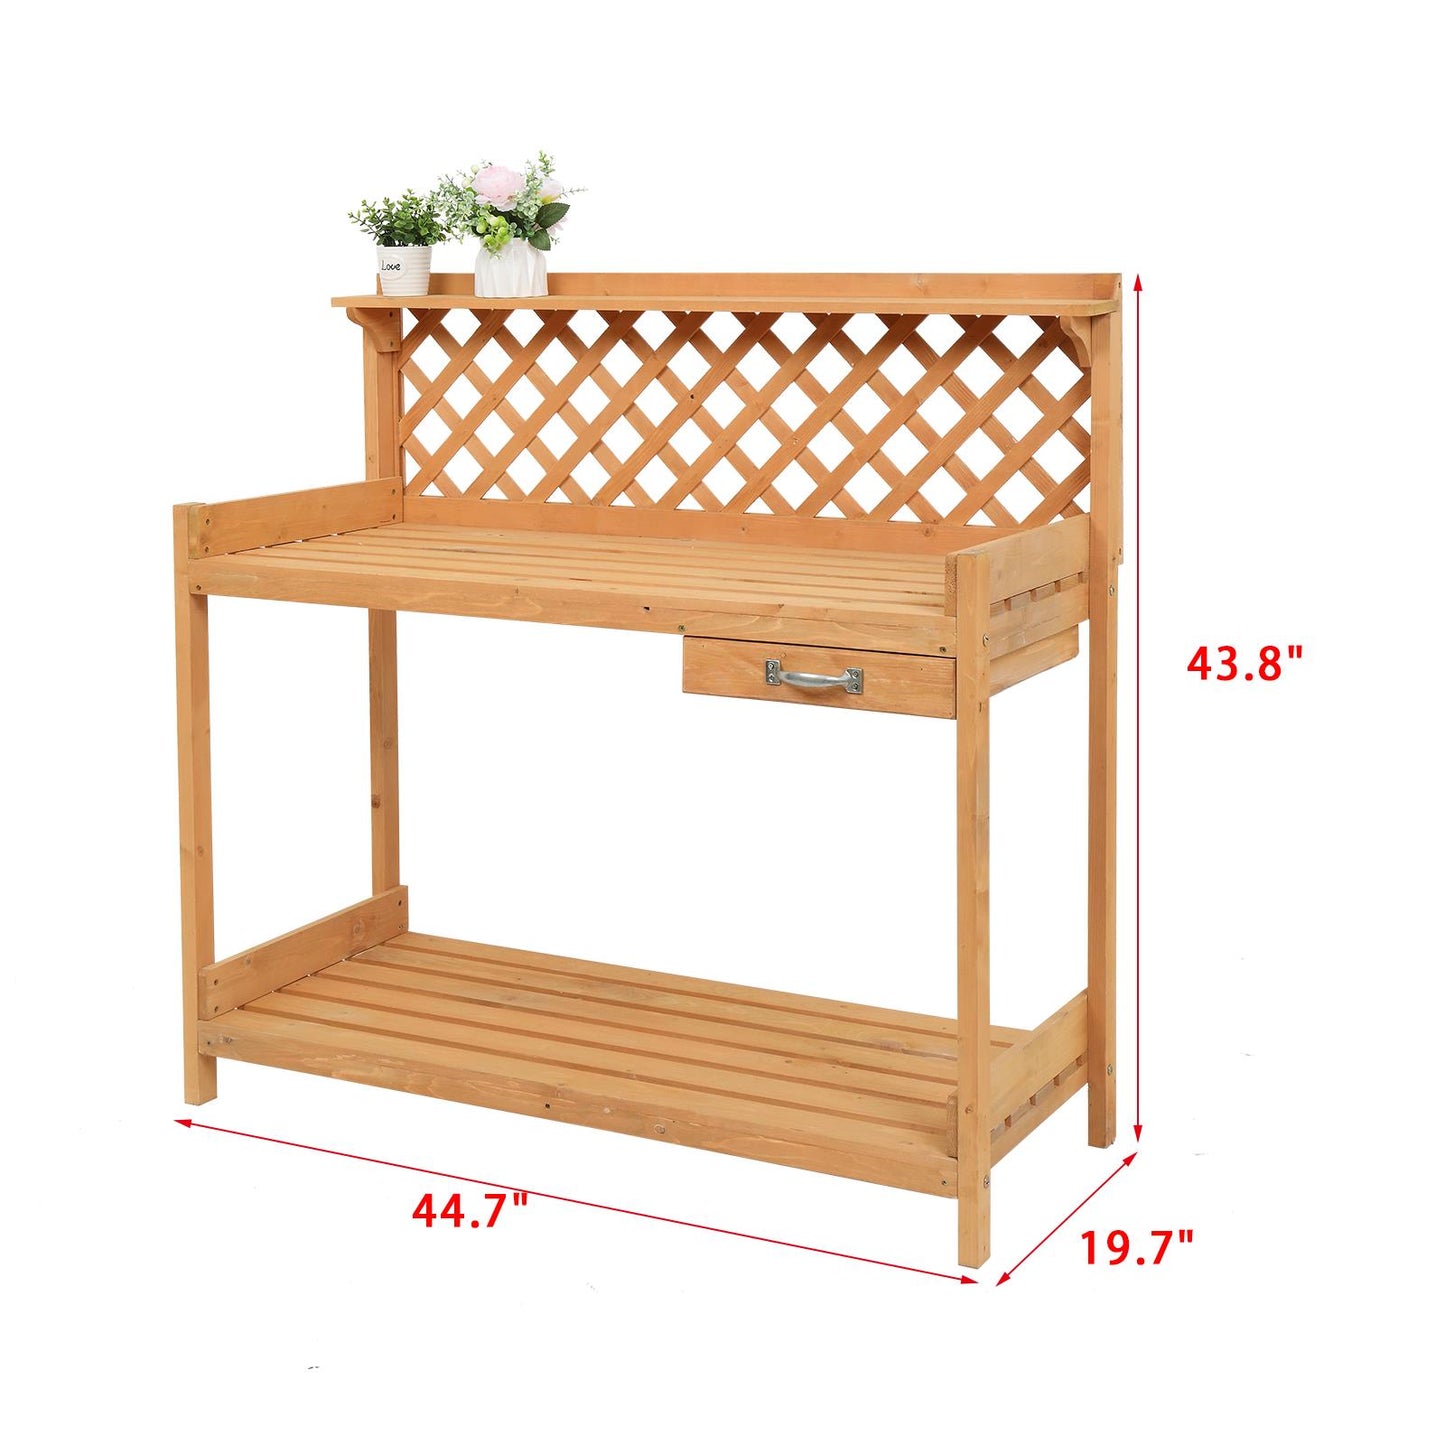 Garden Workbench With Drawer